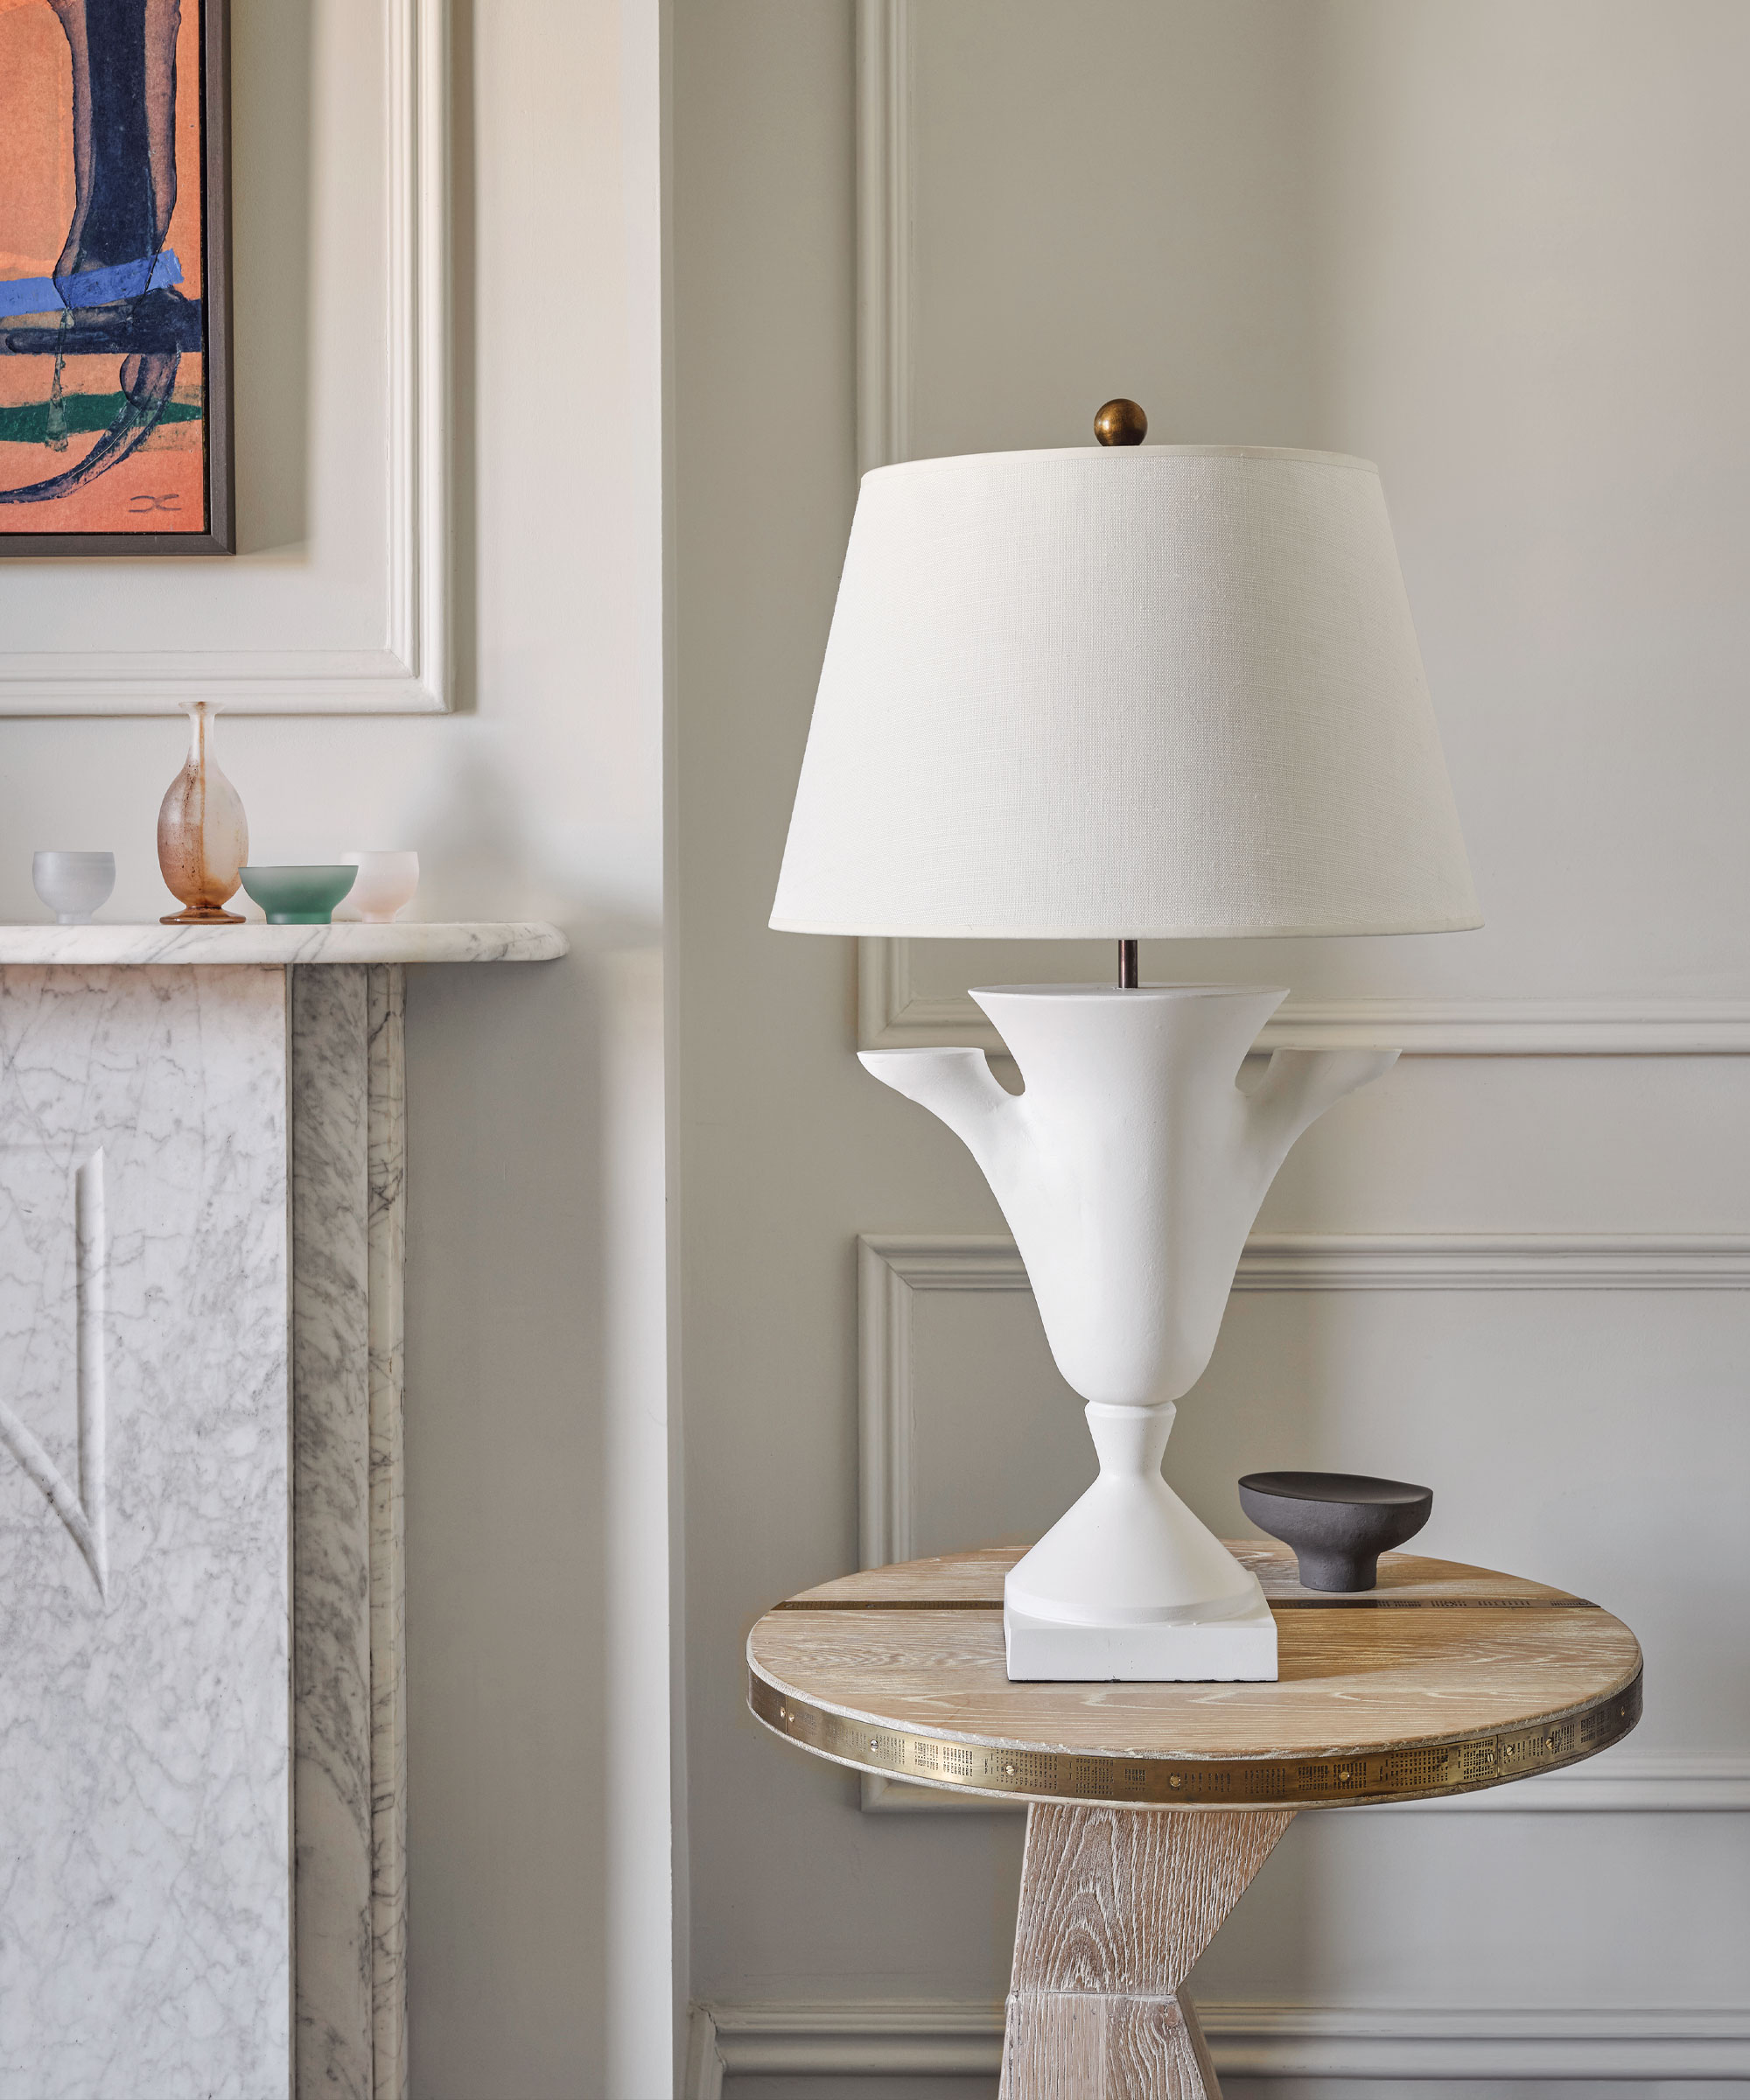 Primer plano de una lámpara de mesa de color crema con una base escultórica de cerámica, colocada encima de una mesa auxiliar de madera, obras de arte y una chimenea en el fondo